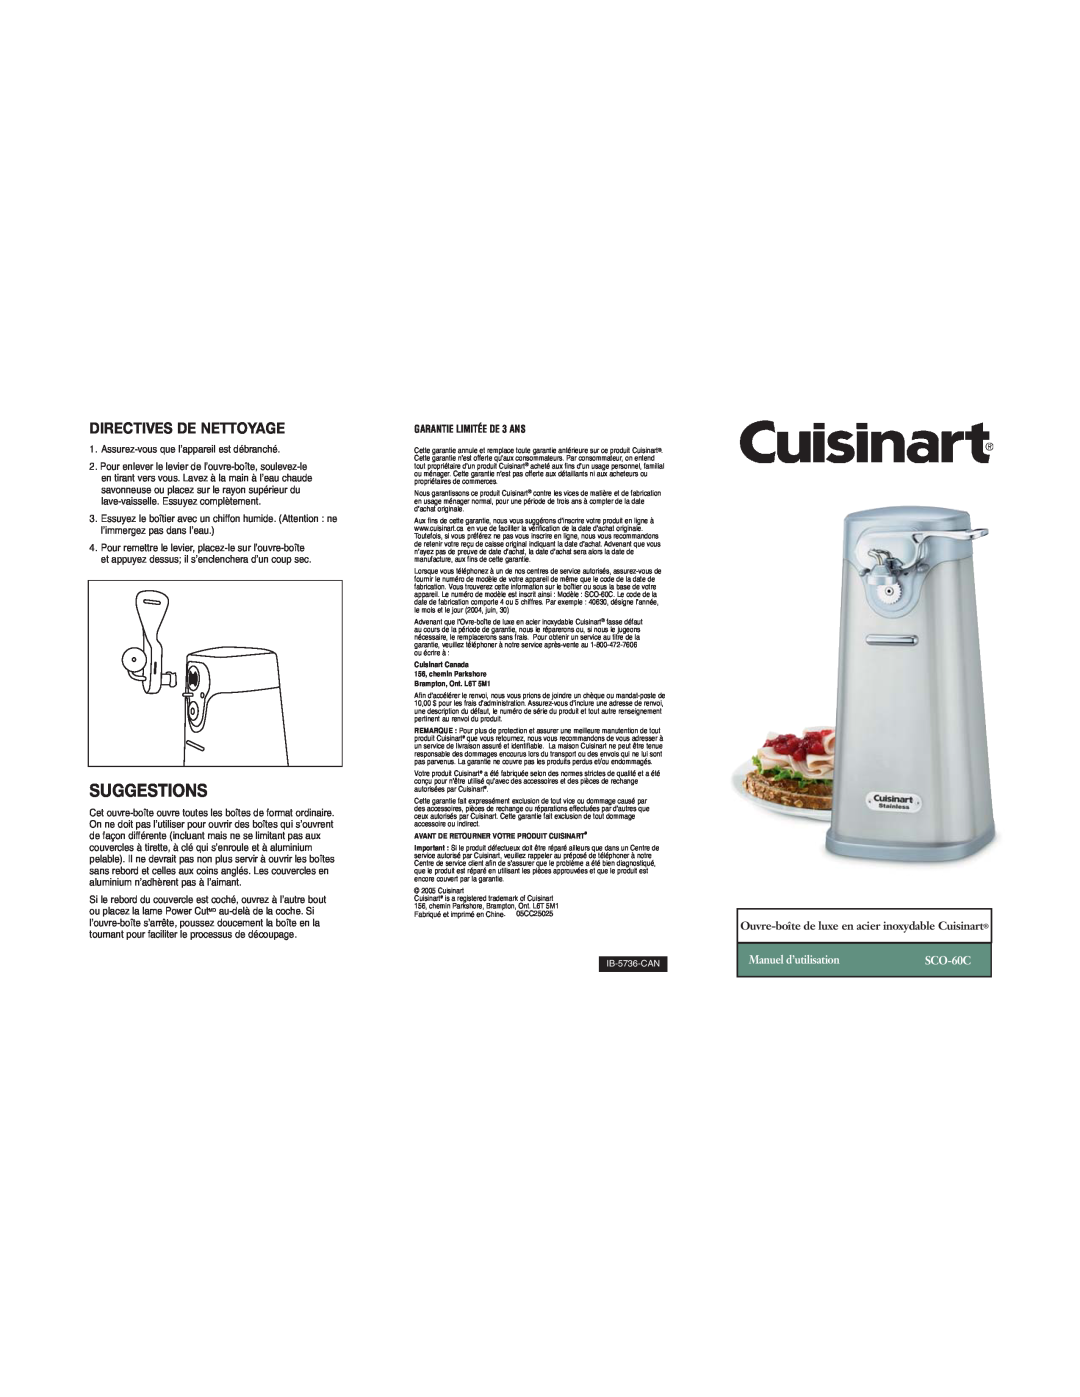 Cuisinart SCO-60C warranty Directives De Nettoyage, Manuel d’utilisation, Suggestions, GARANTIE LIMITÉE DE 3 ANS 